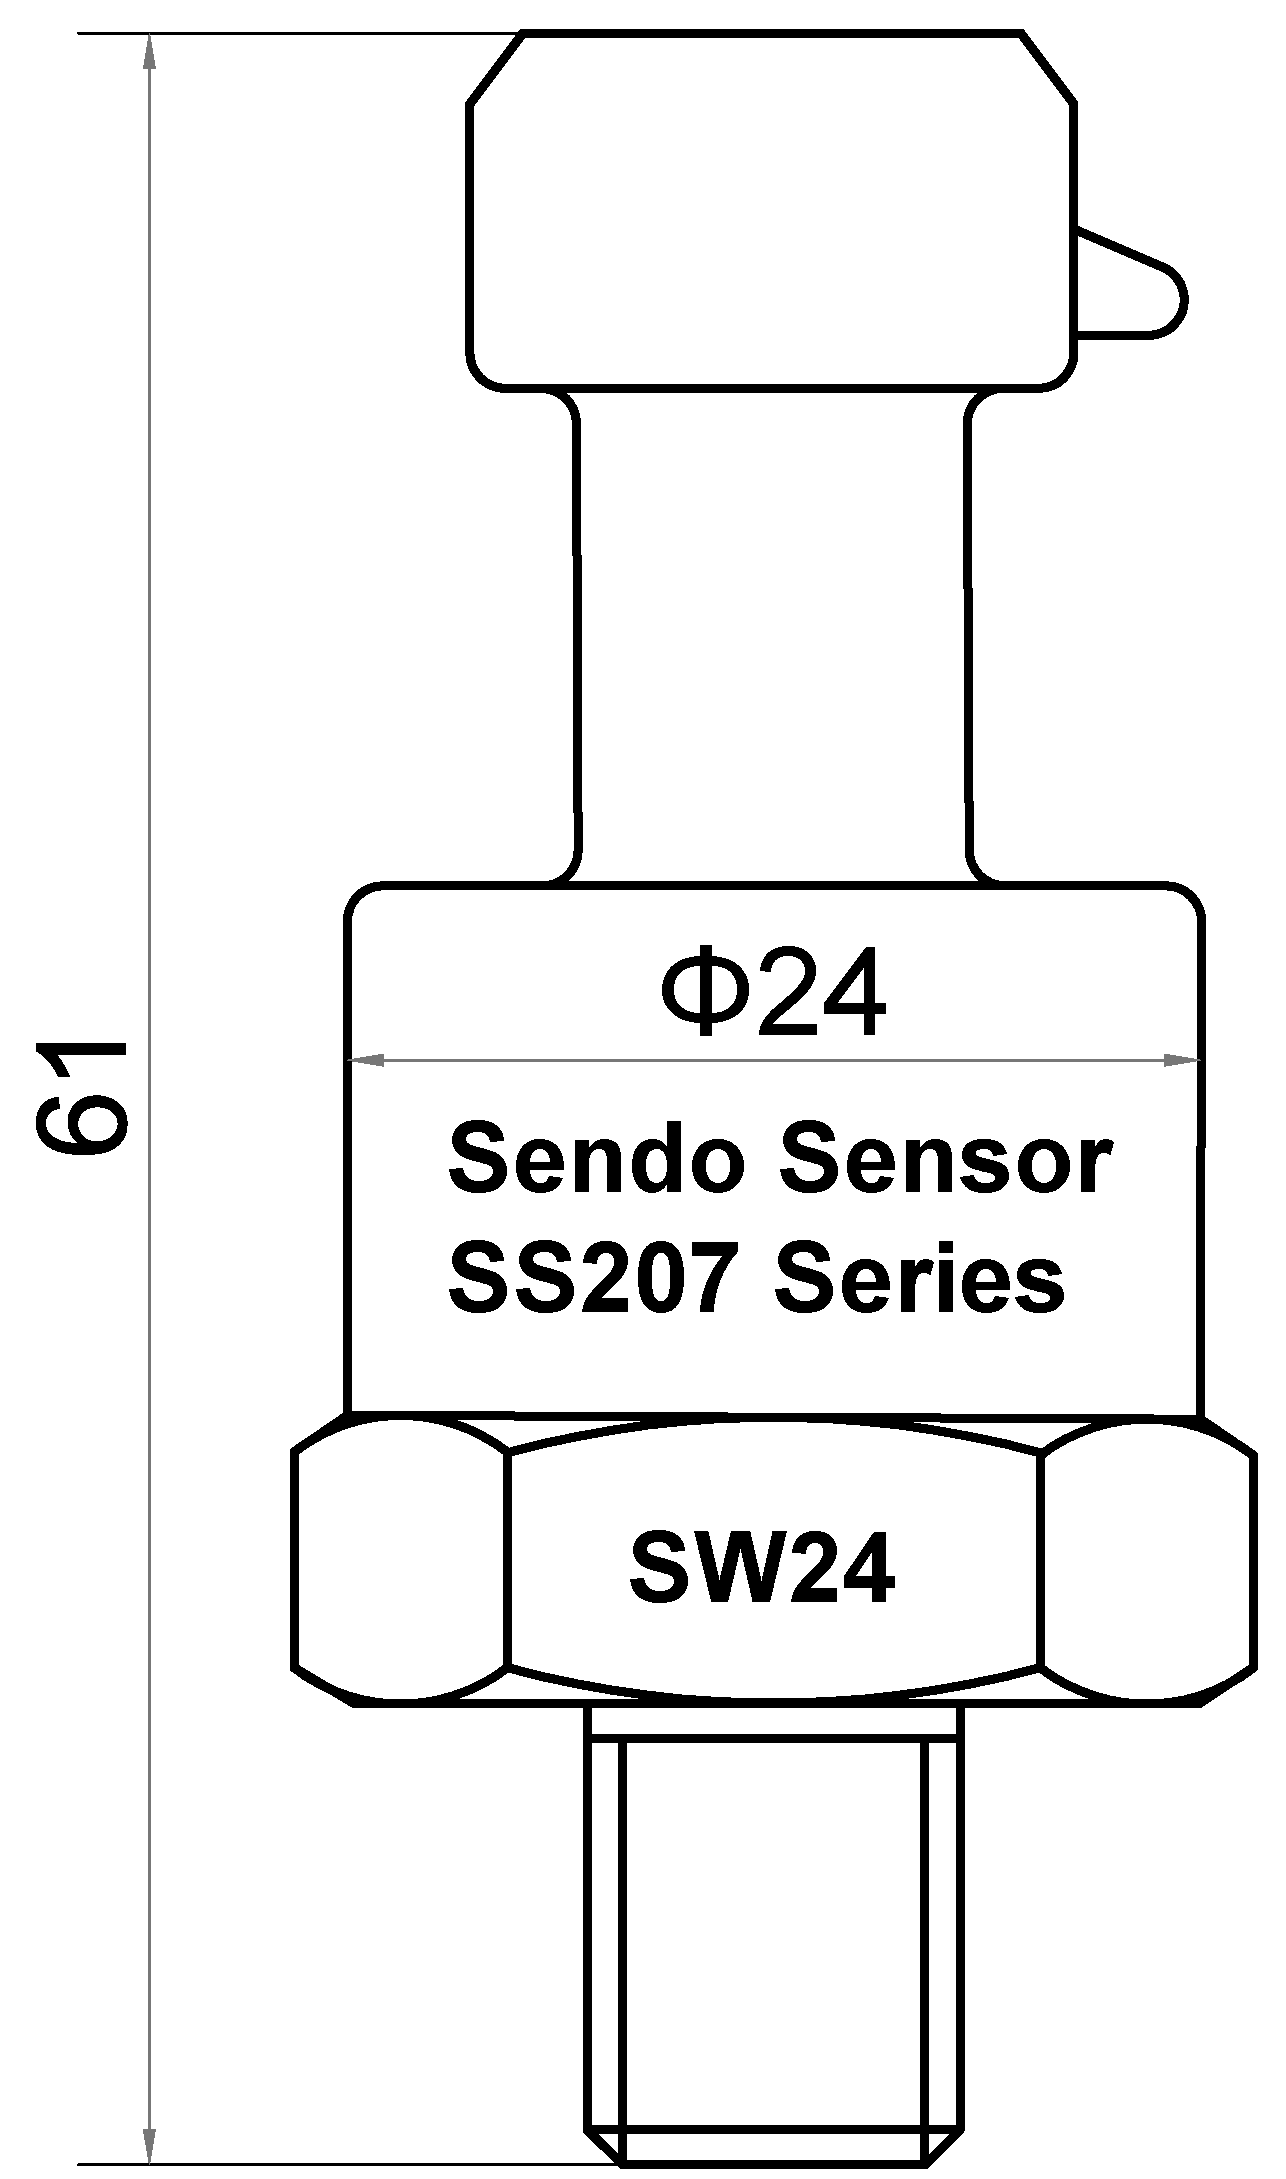 SS207 series low cost pressure sensor